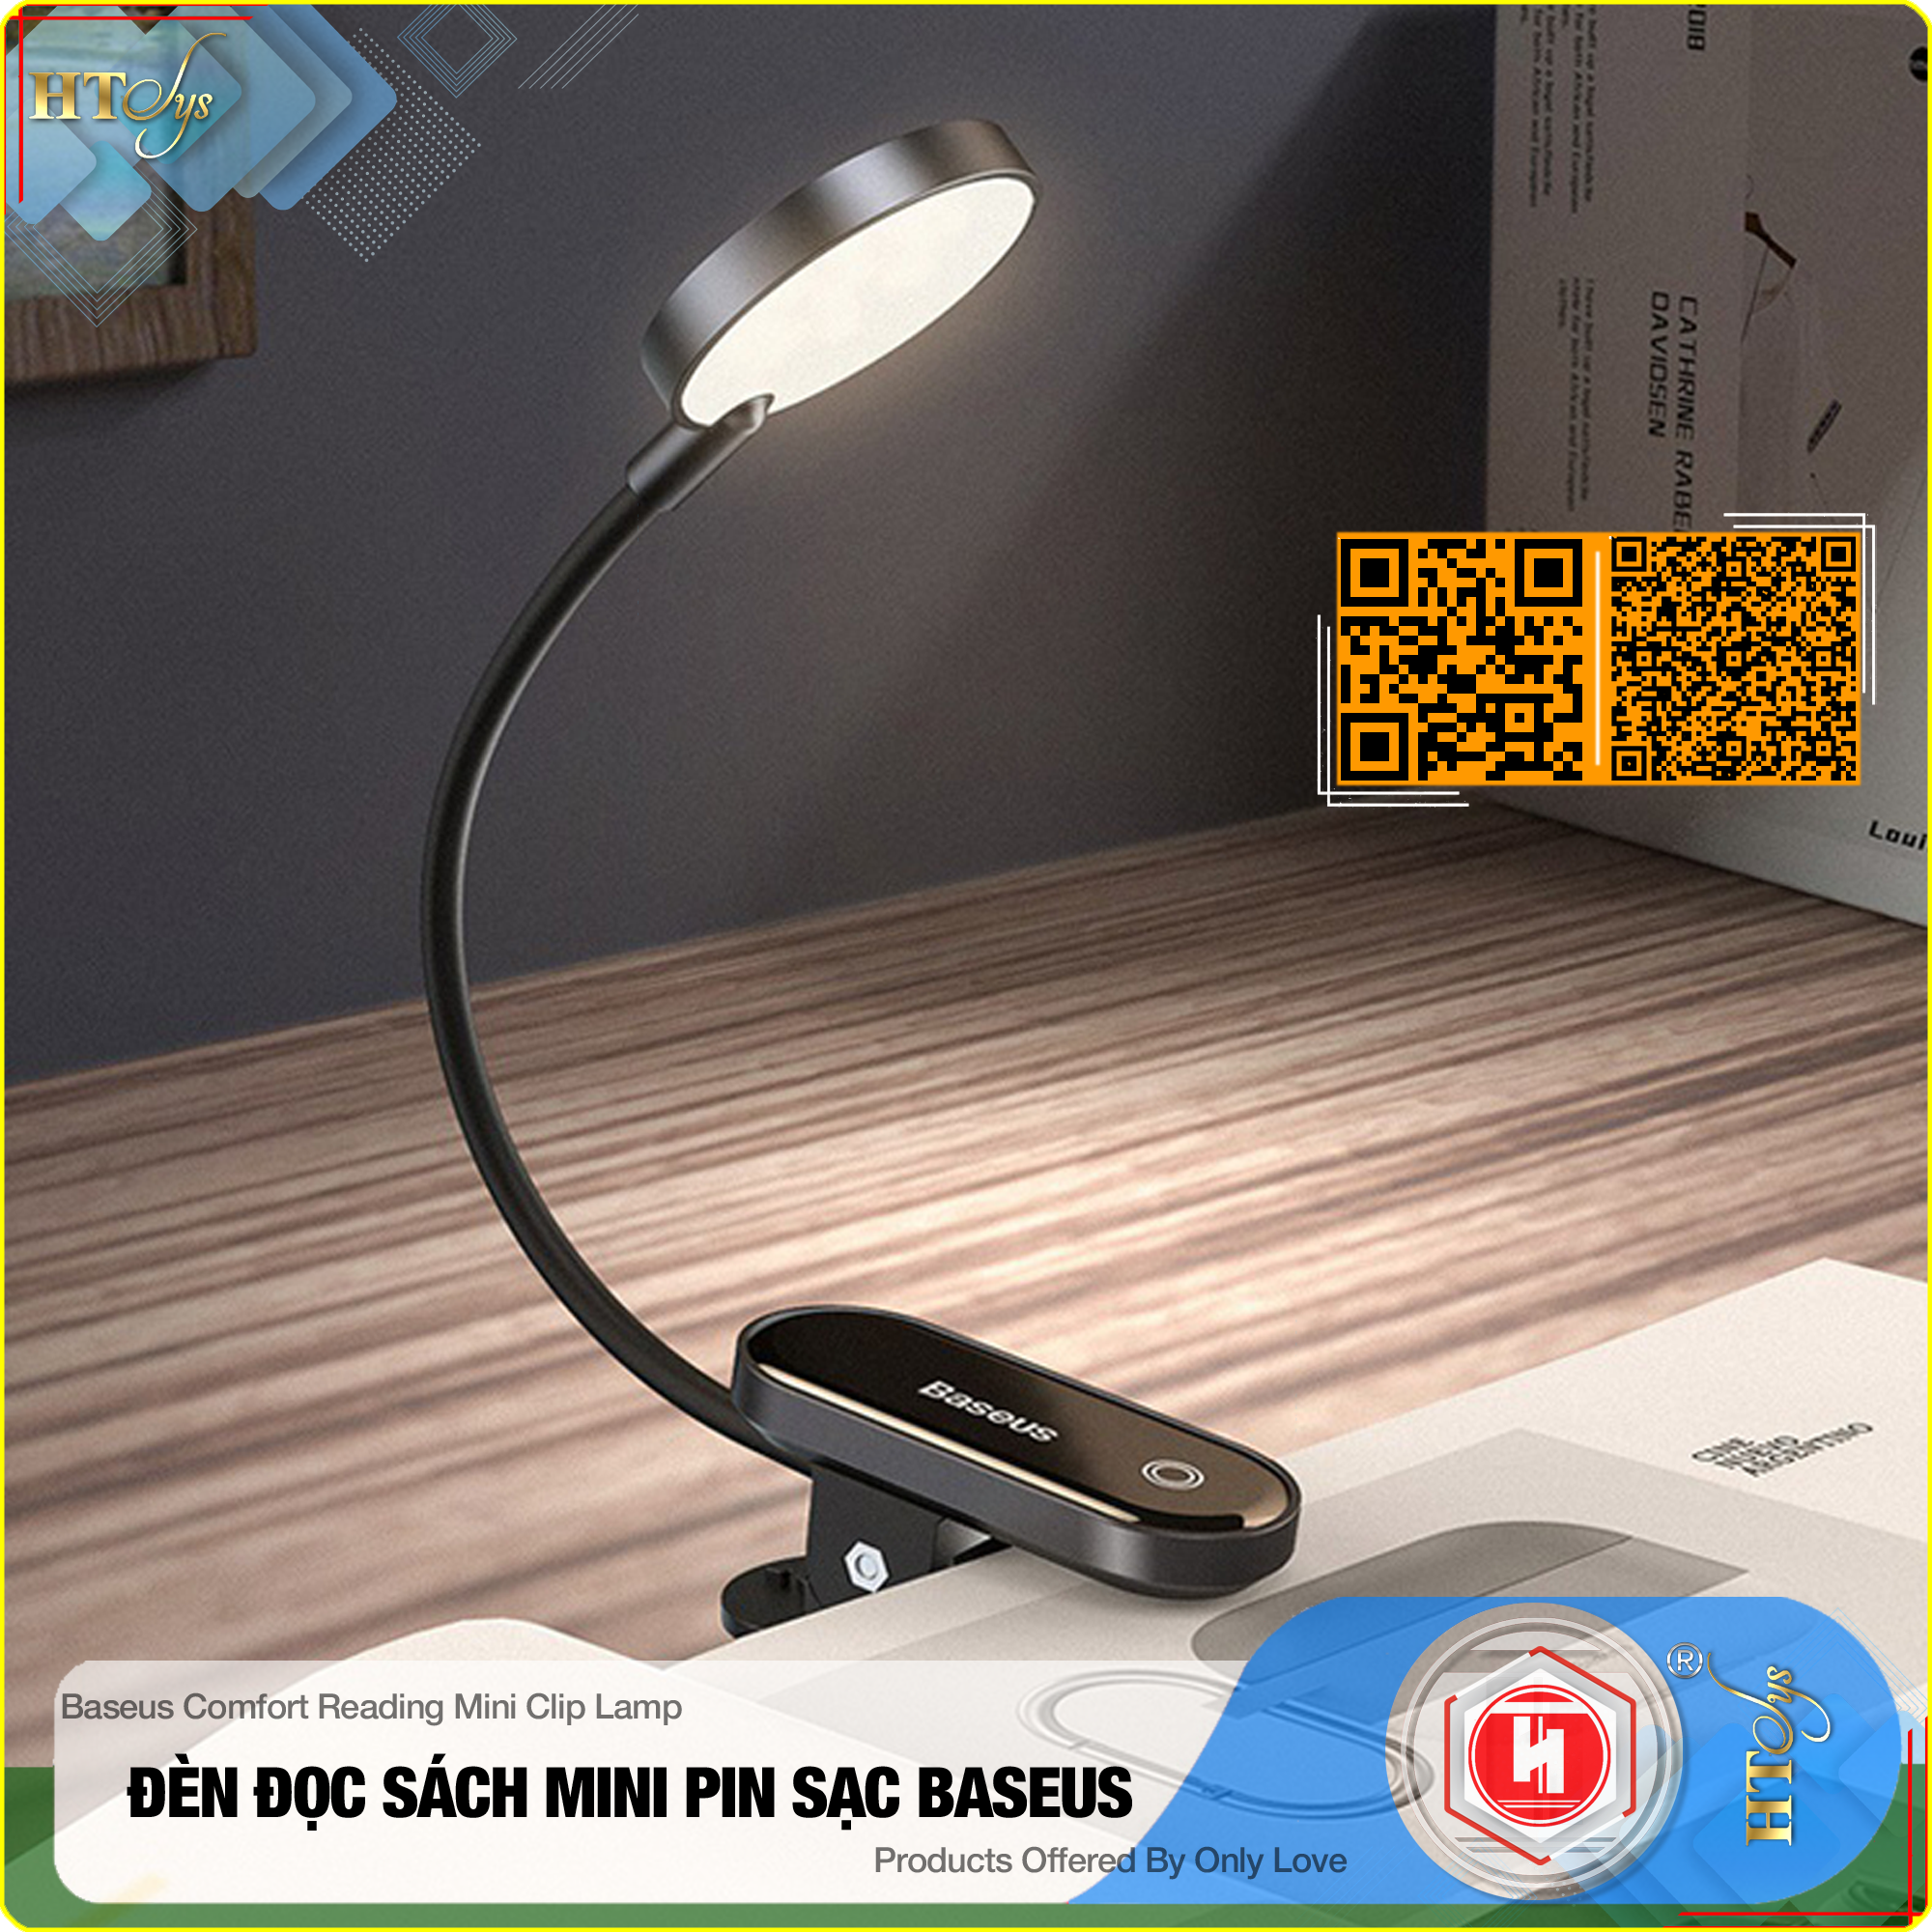 Đèn đọc sách mini Baseus Comfort Reading Mini Clip Lamp - Pin sạc 350mAh  - Chân đế kẹp - 03 Cường độ sáng - 24H sử dụng - Hàng Nhập Khẩu